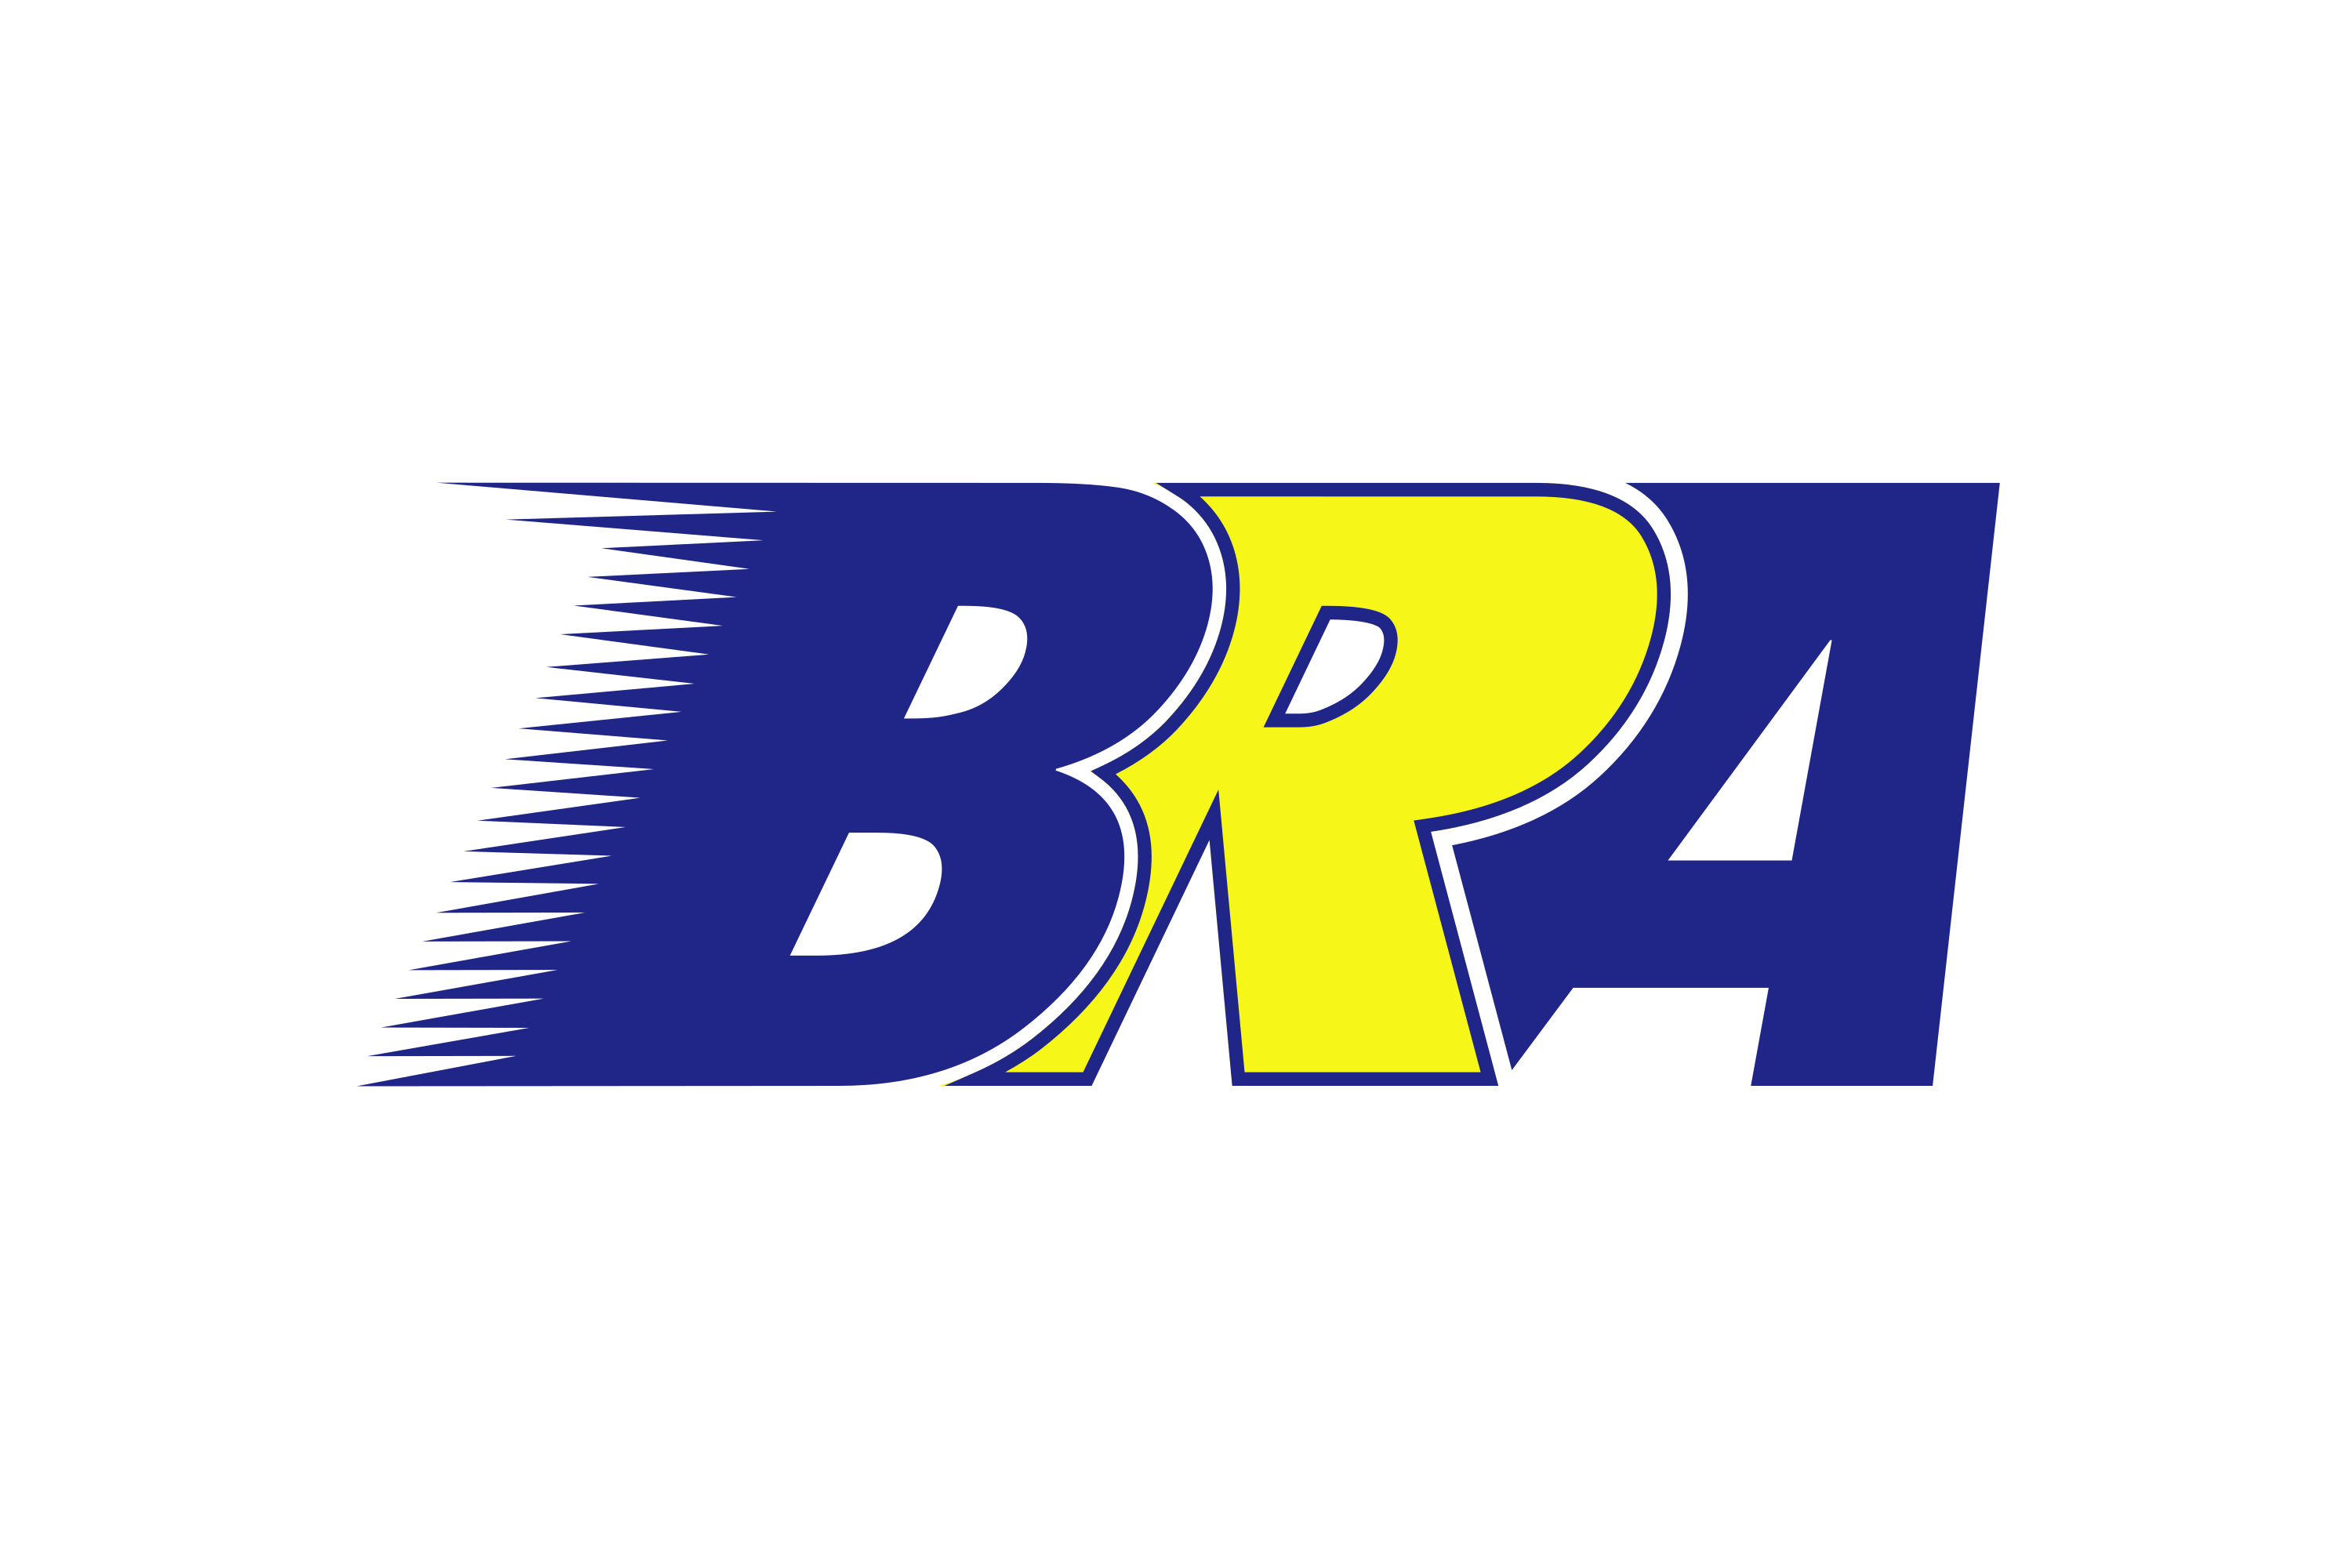 BRA Transportes Aéreos Logo